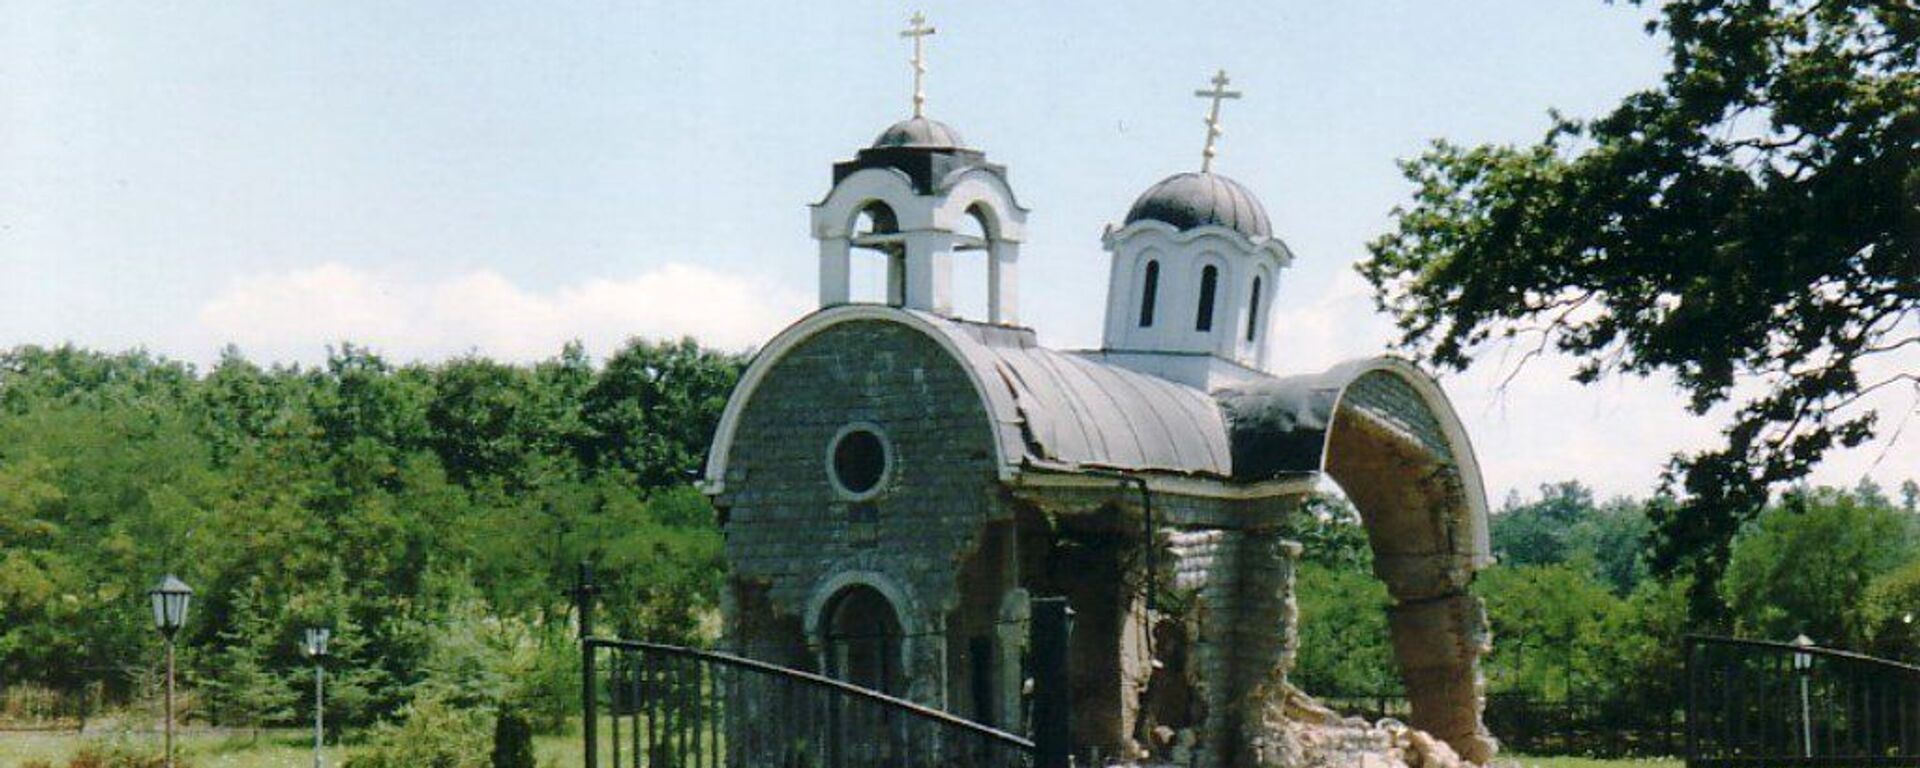 Црква Свете Тројице у Петрићу на Космету уништена у августу 1999. - Sputnik Србија, 1920, 25.05.2021